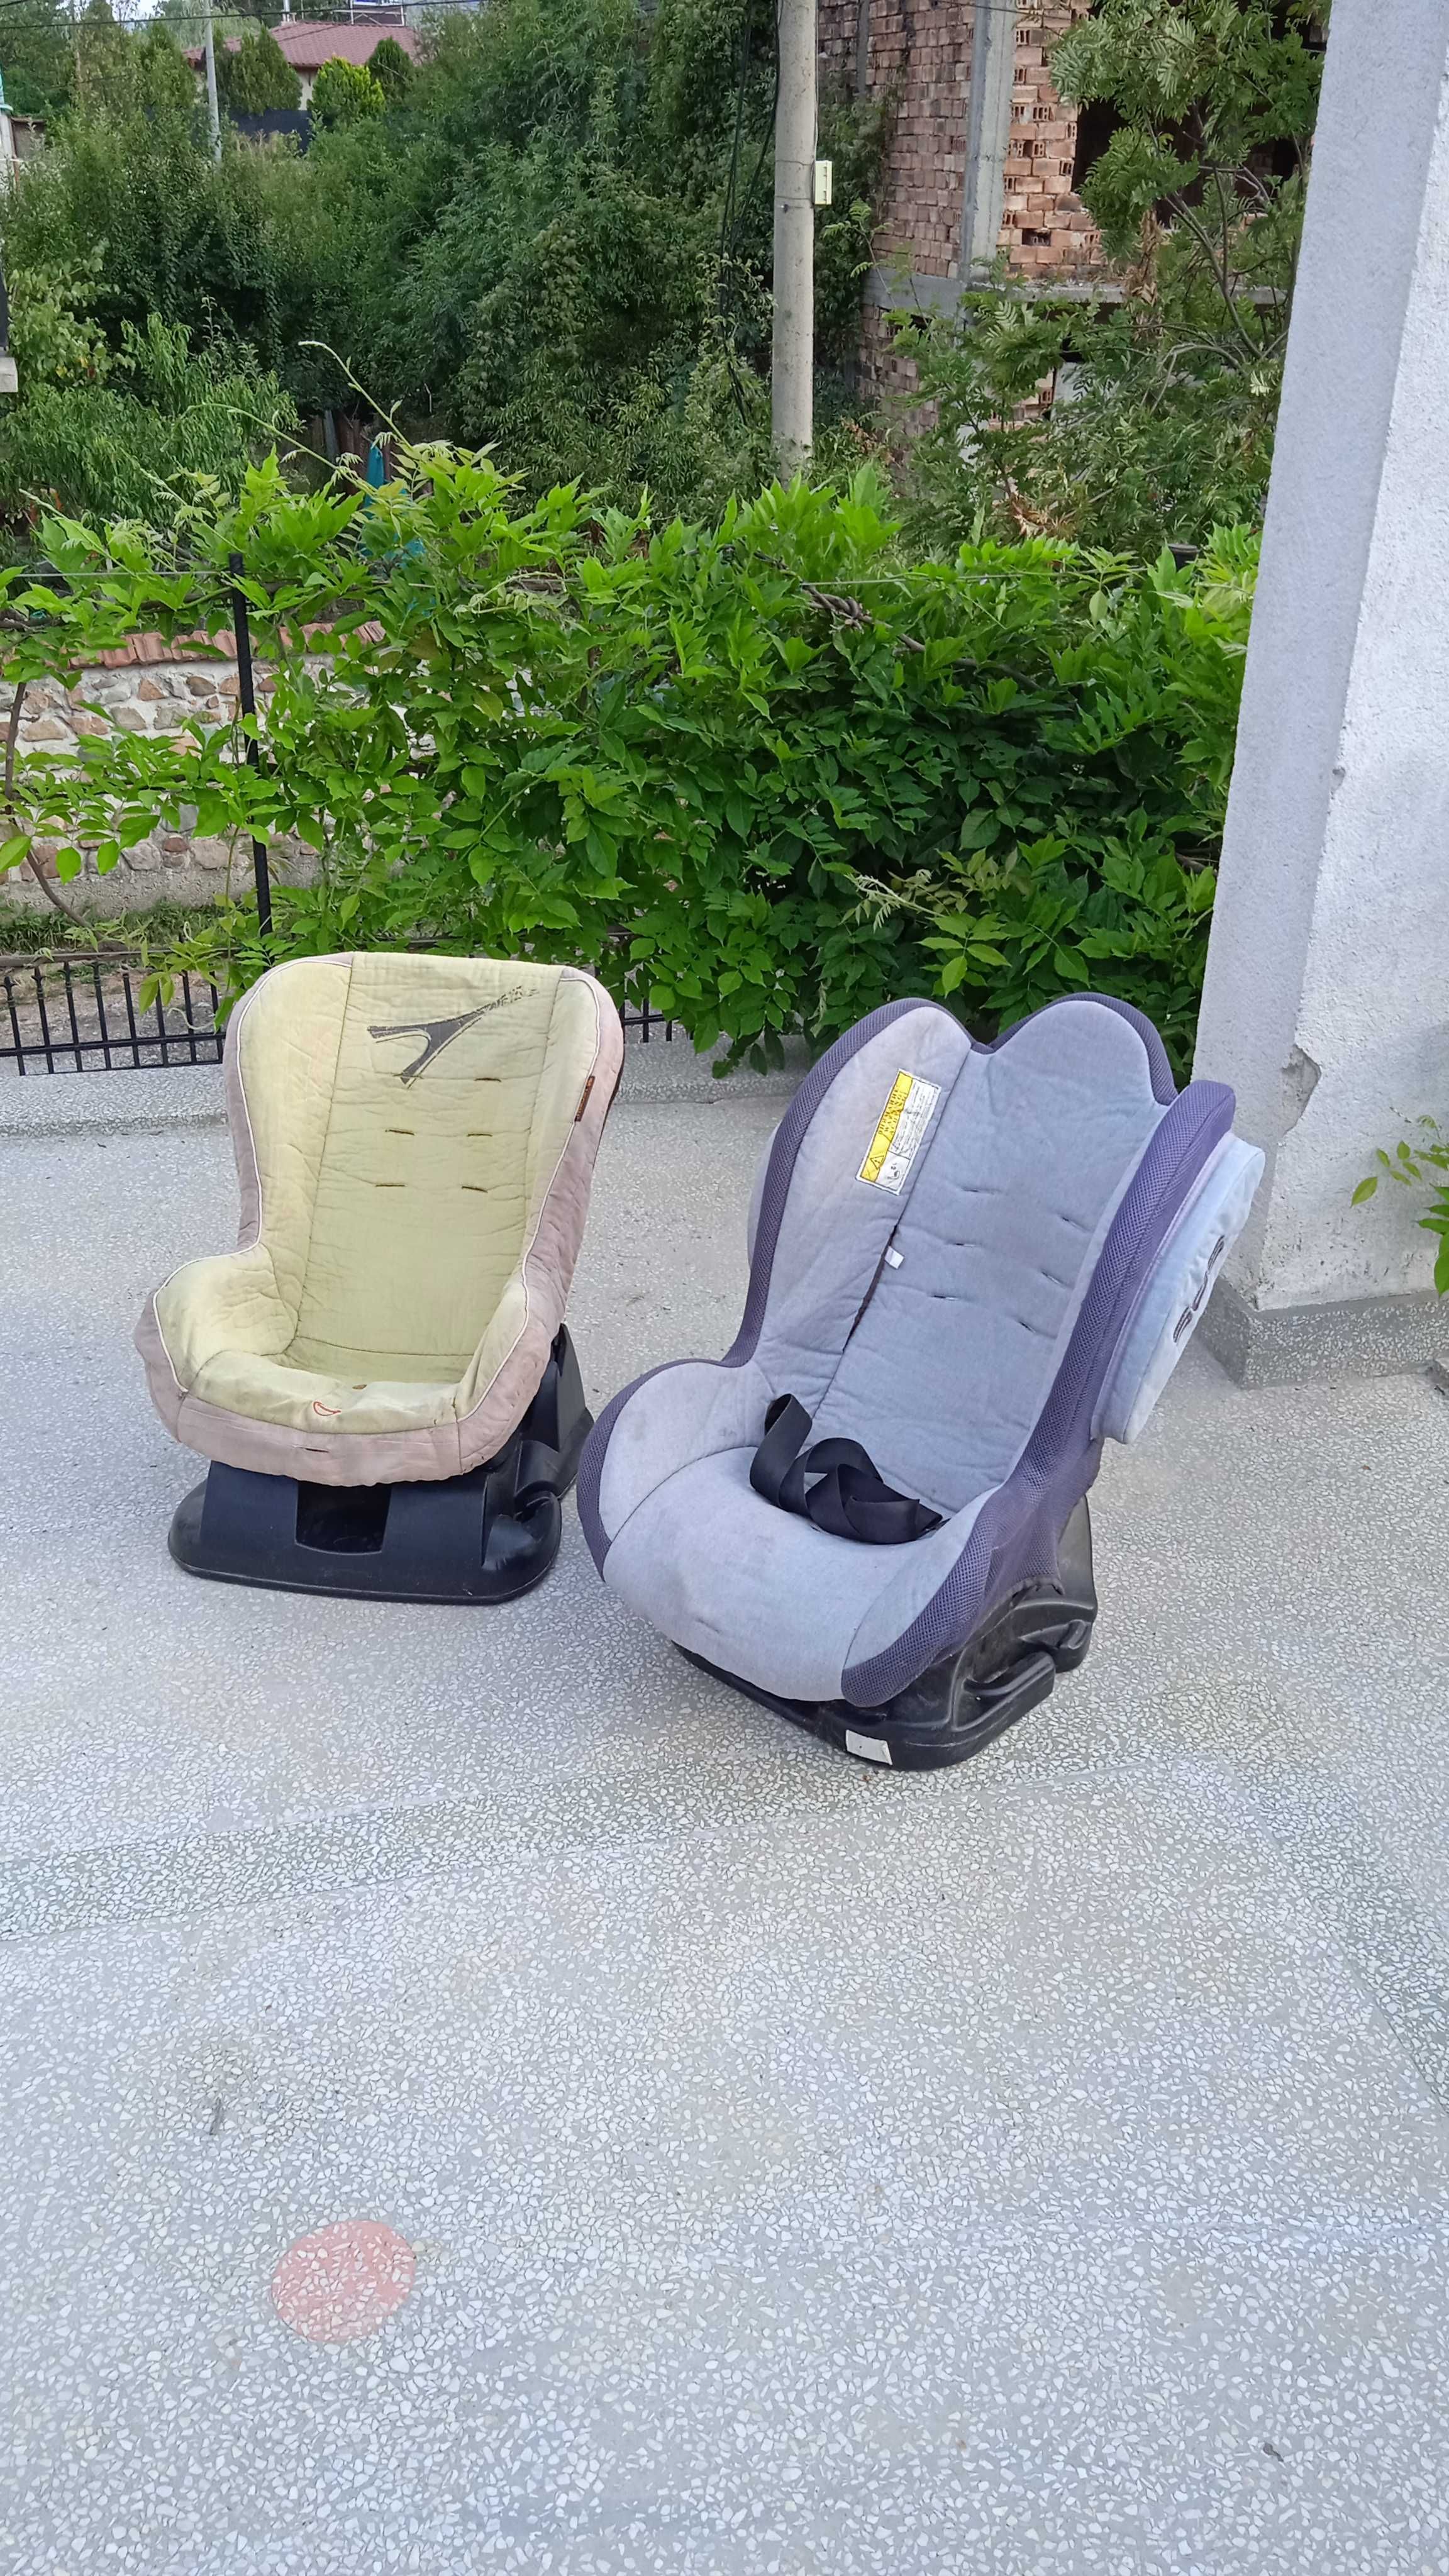 Детски детско бебешки бебешко кошче кошчета столче столчета за кола